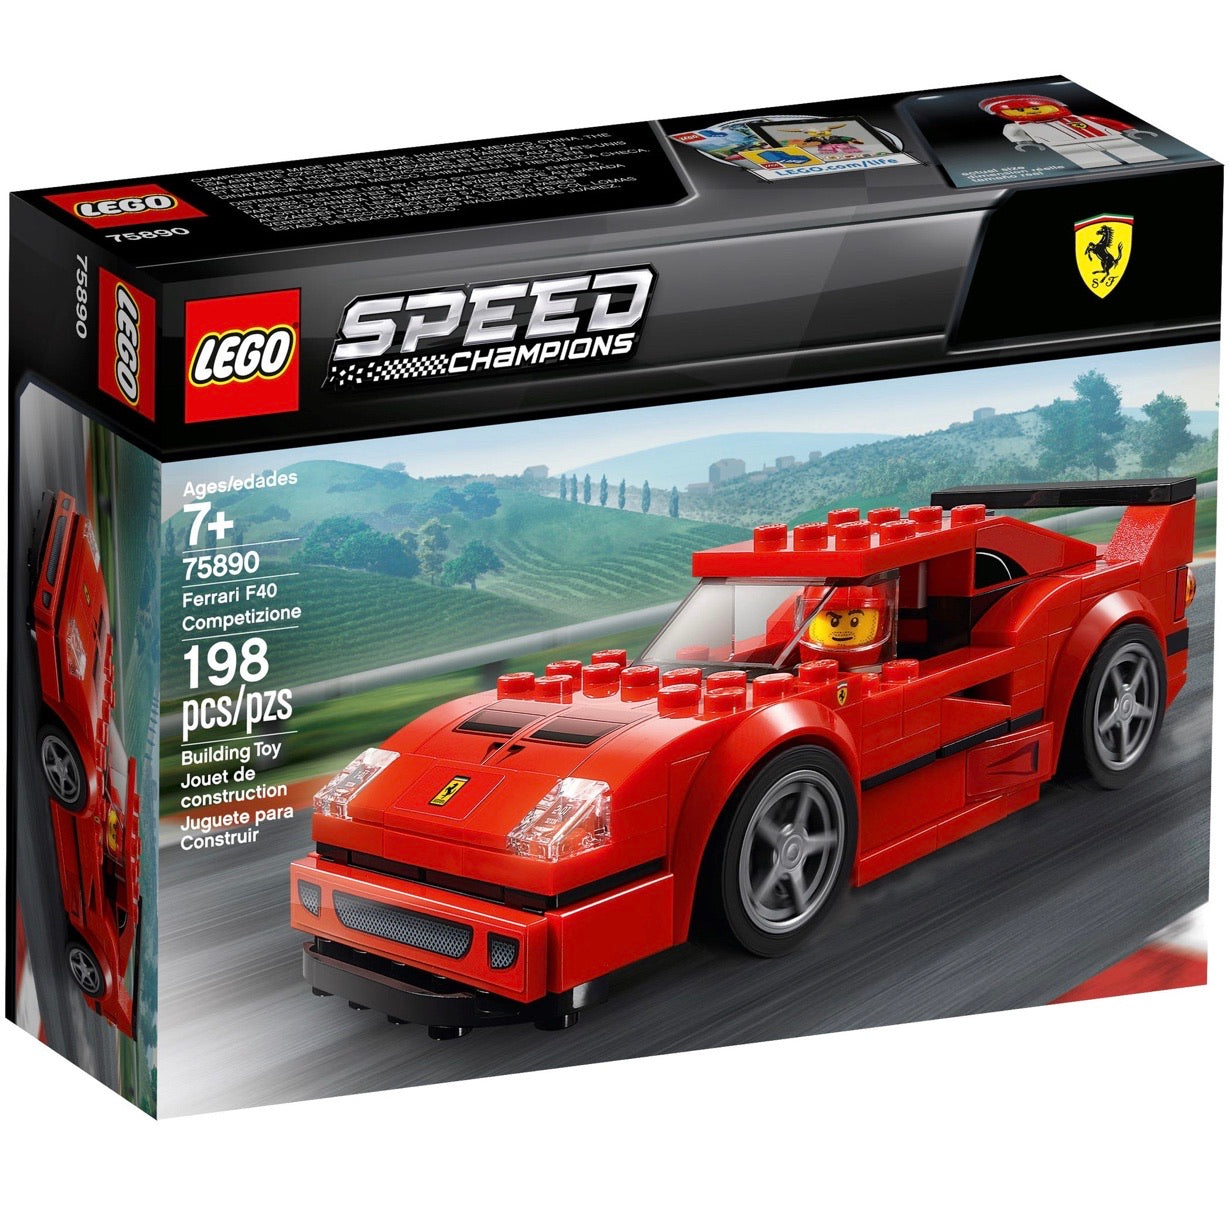 Retired Set 75890 Speed Champions Ferrari F40 Competizione